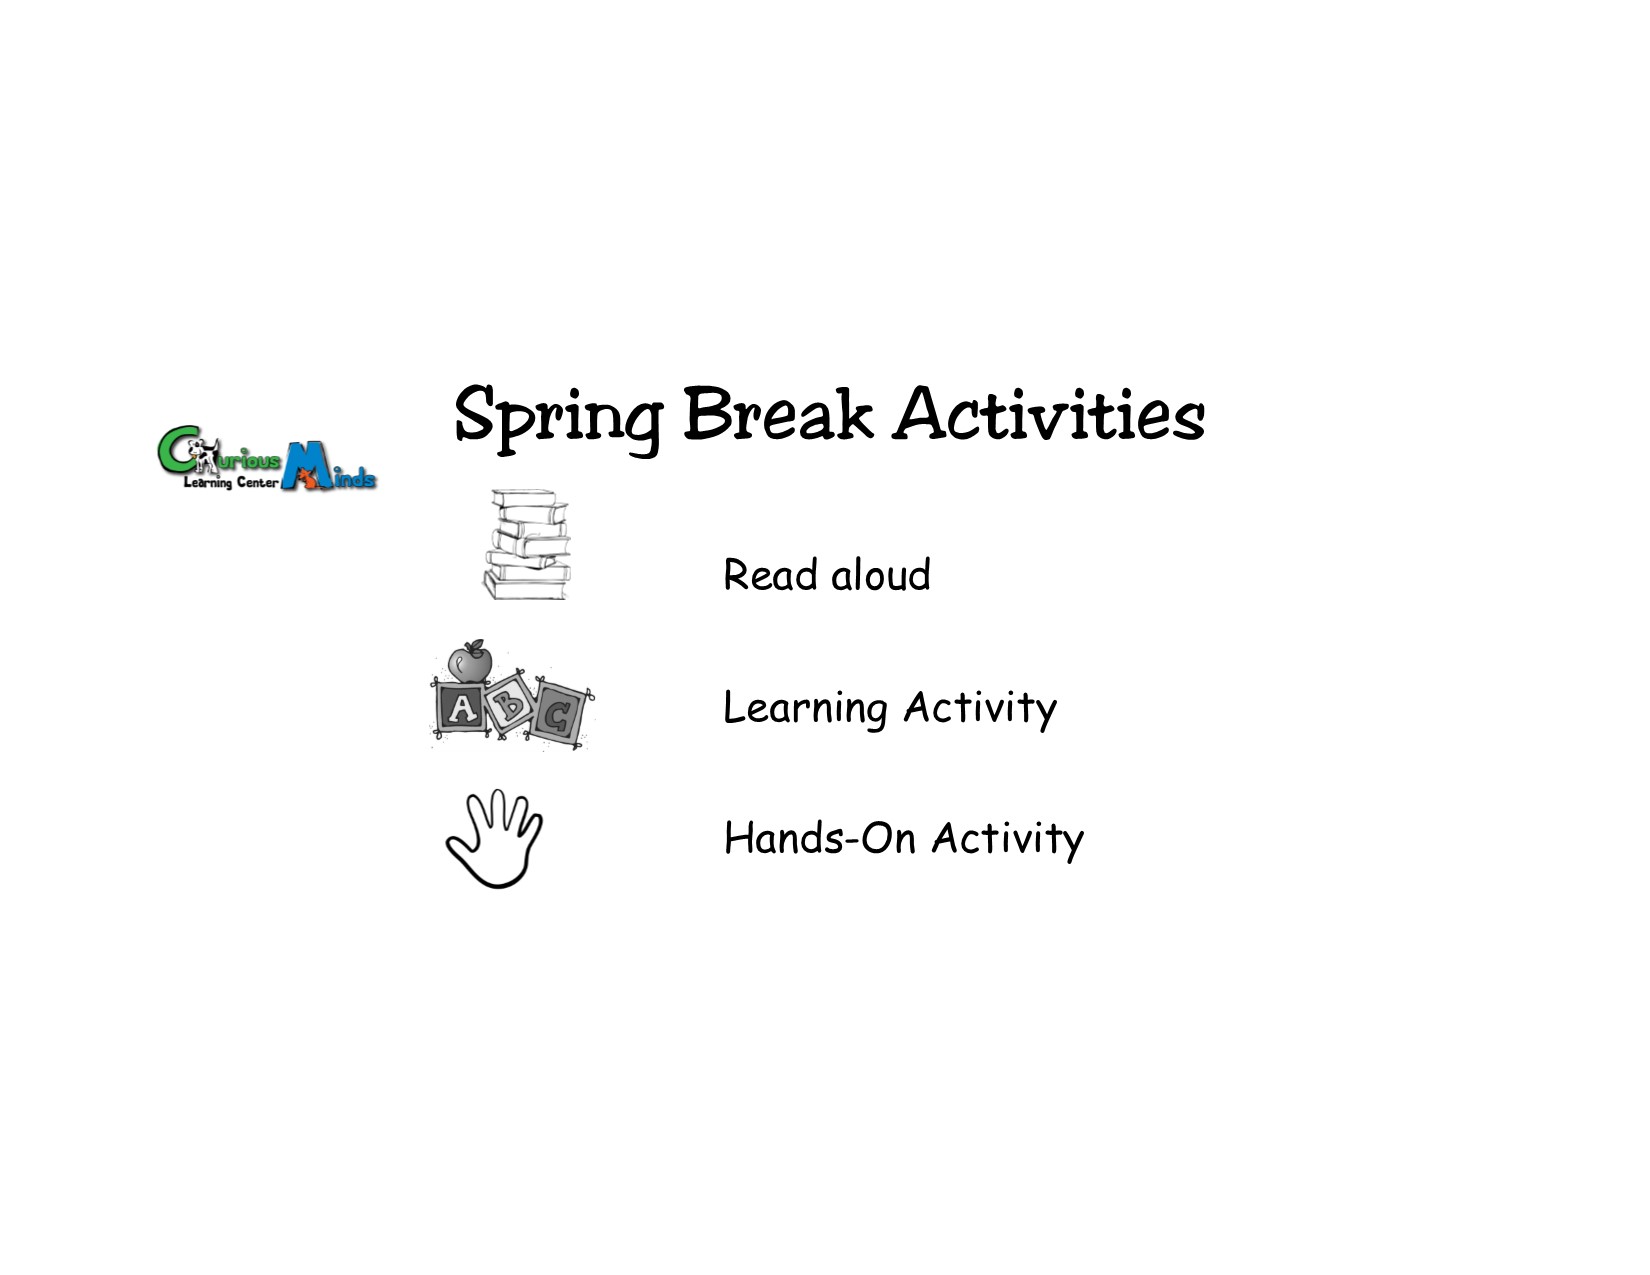 Spring Break Activities!